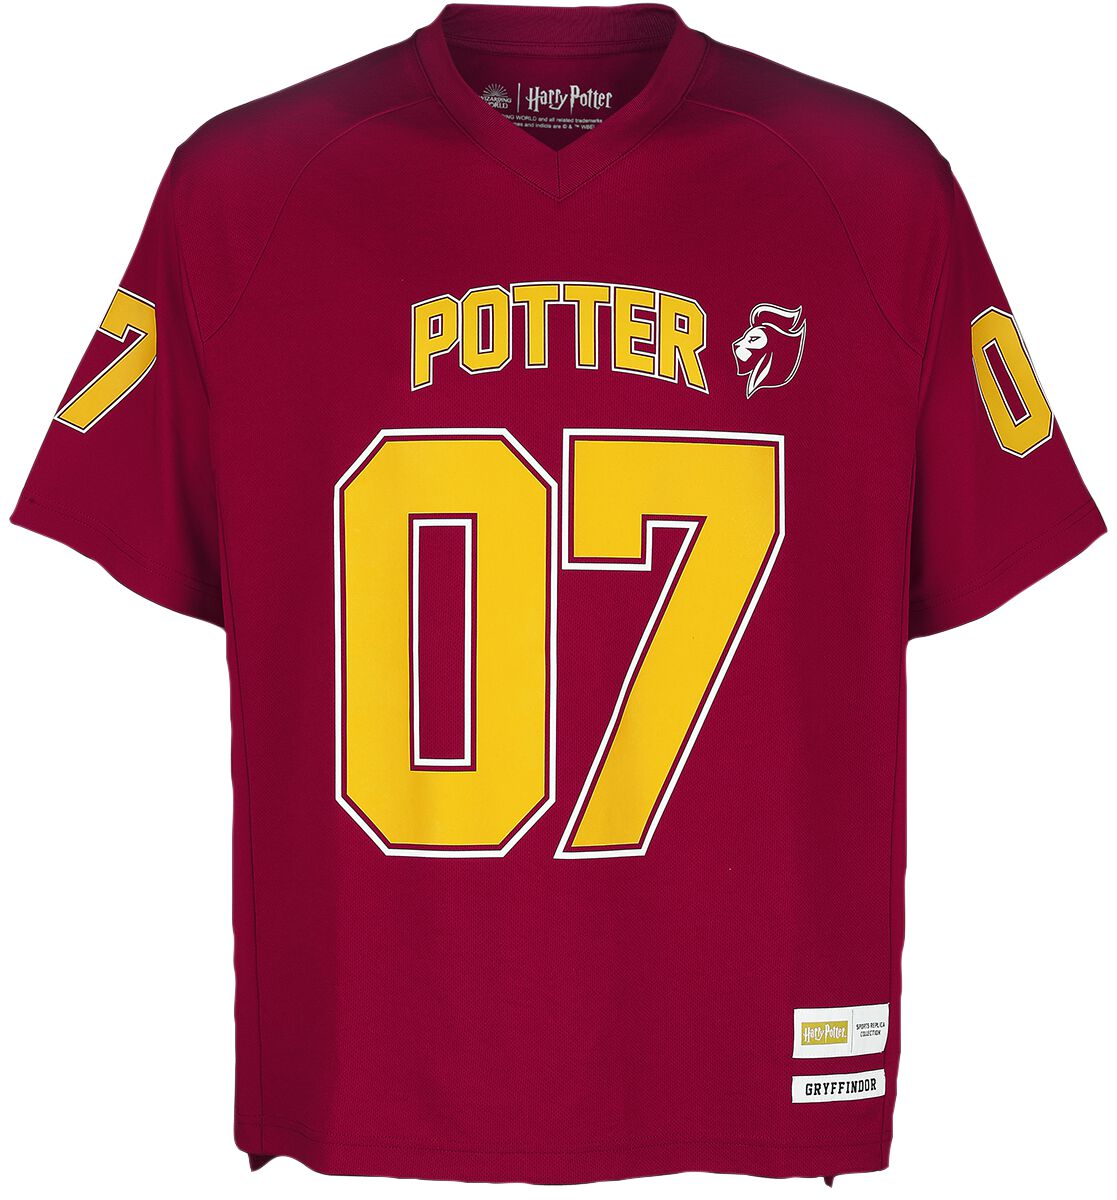 Harry Potter Potter 07 - Gryffindor Jersey red